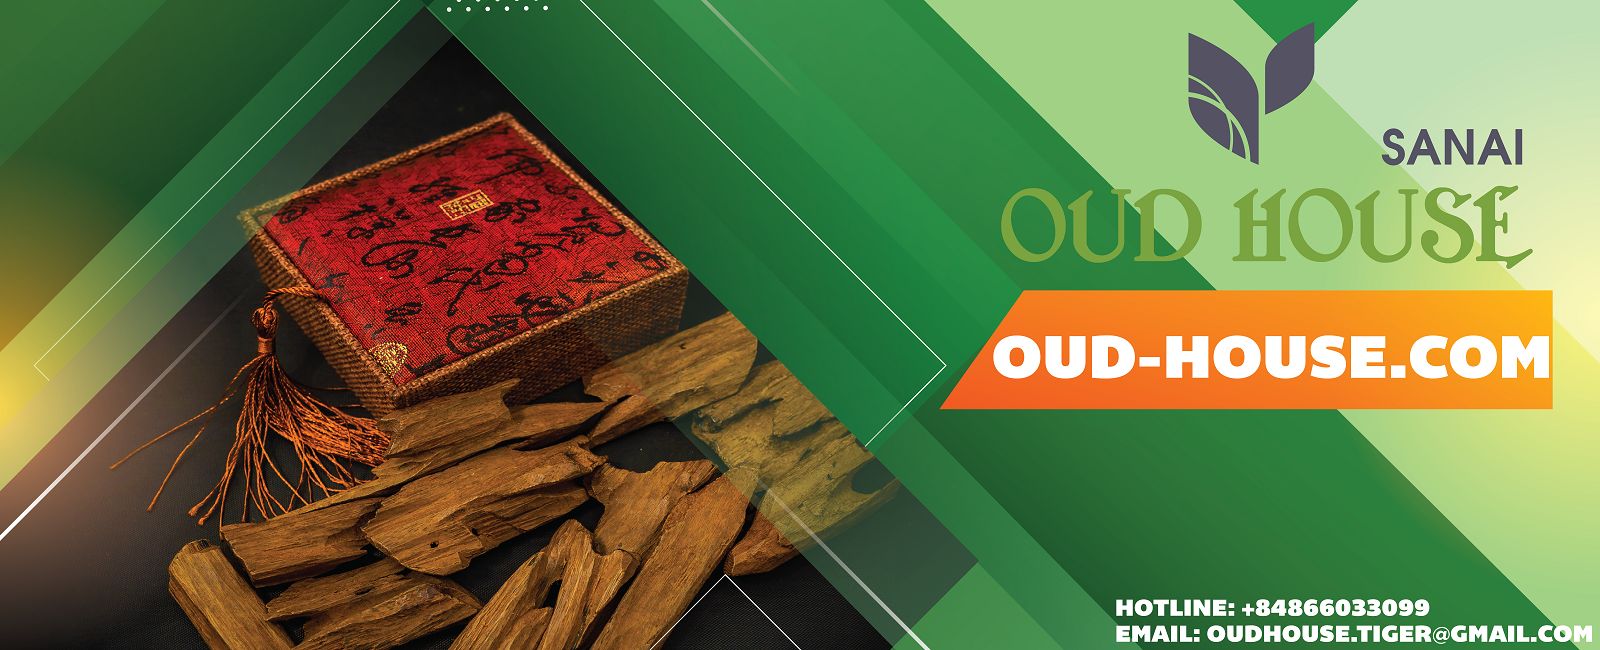 Oud-house cung cấp khoan dầu trầm hương chất lượng và uy tín